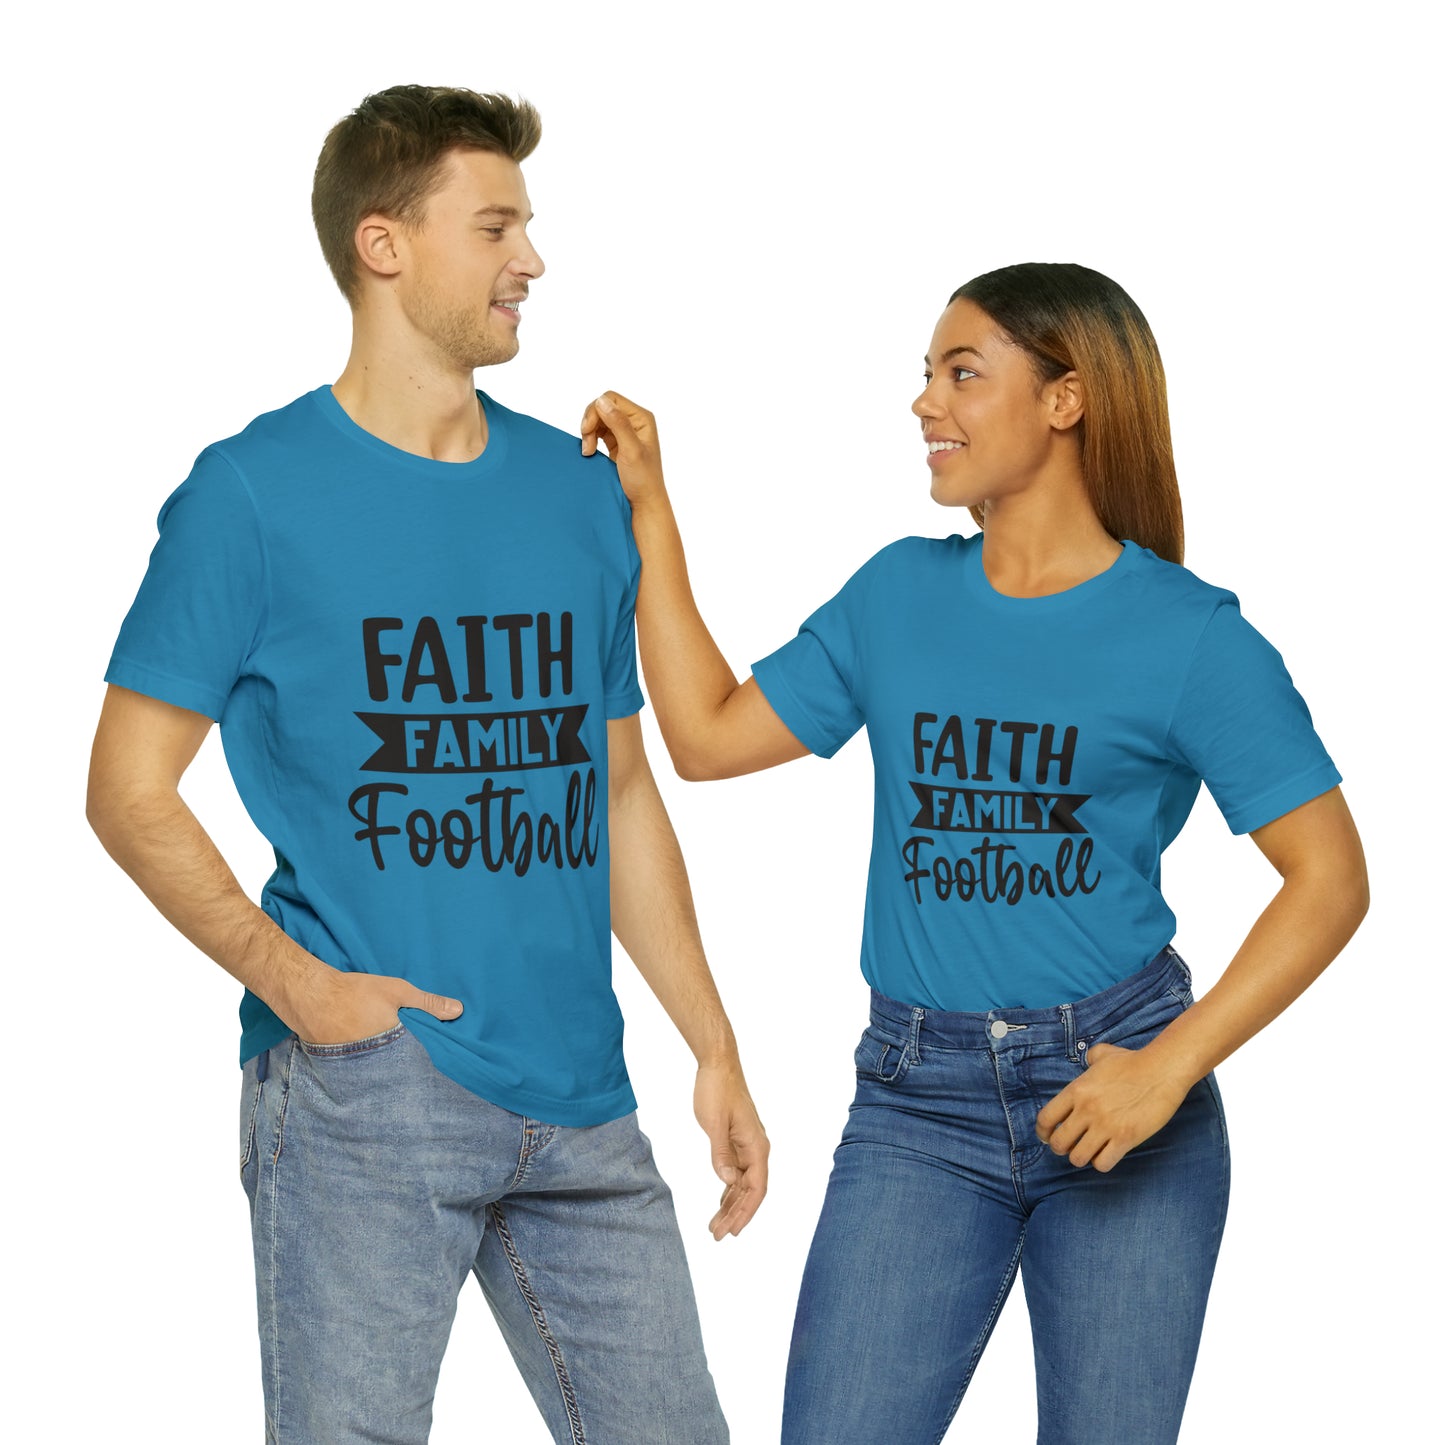 Family, Faith & Football T-shirt